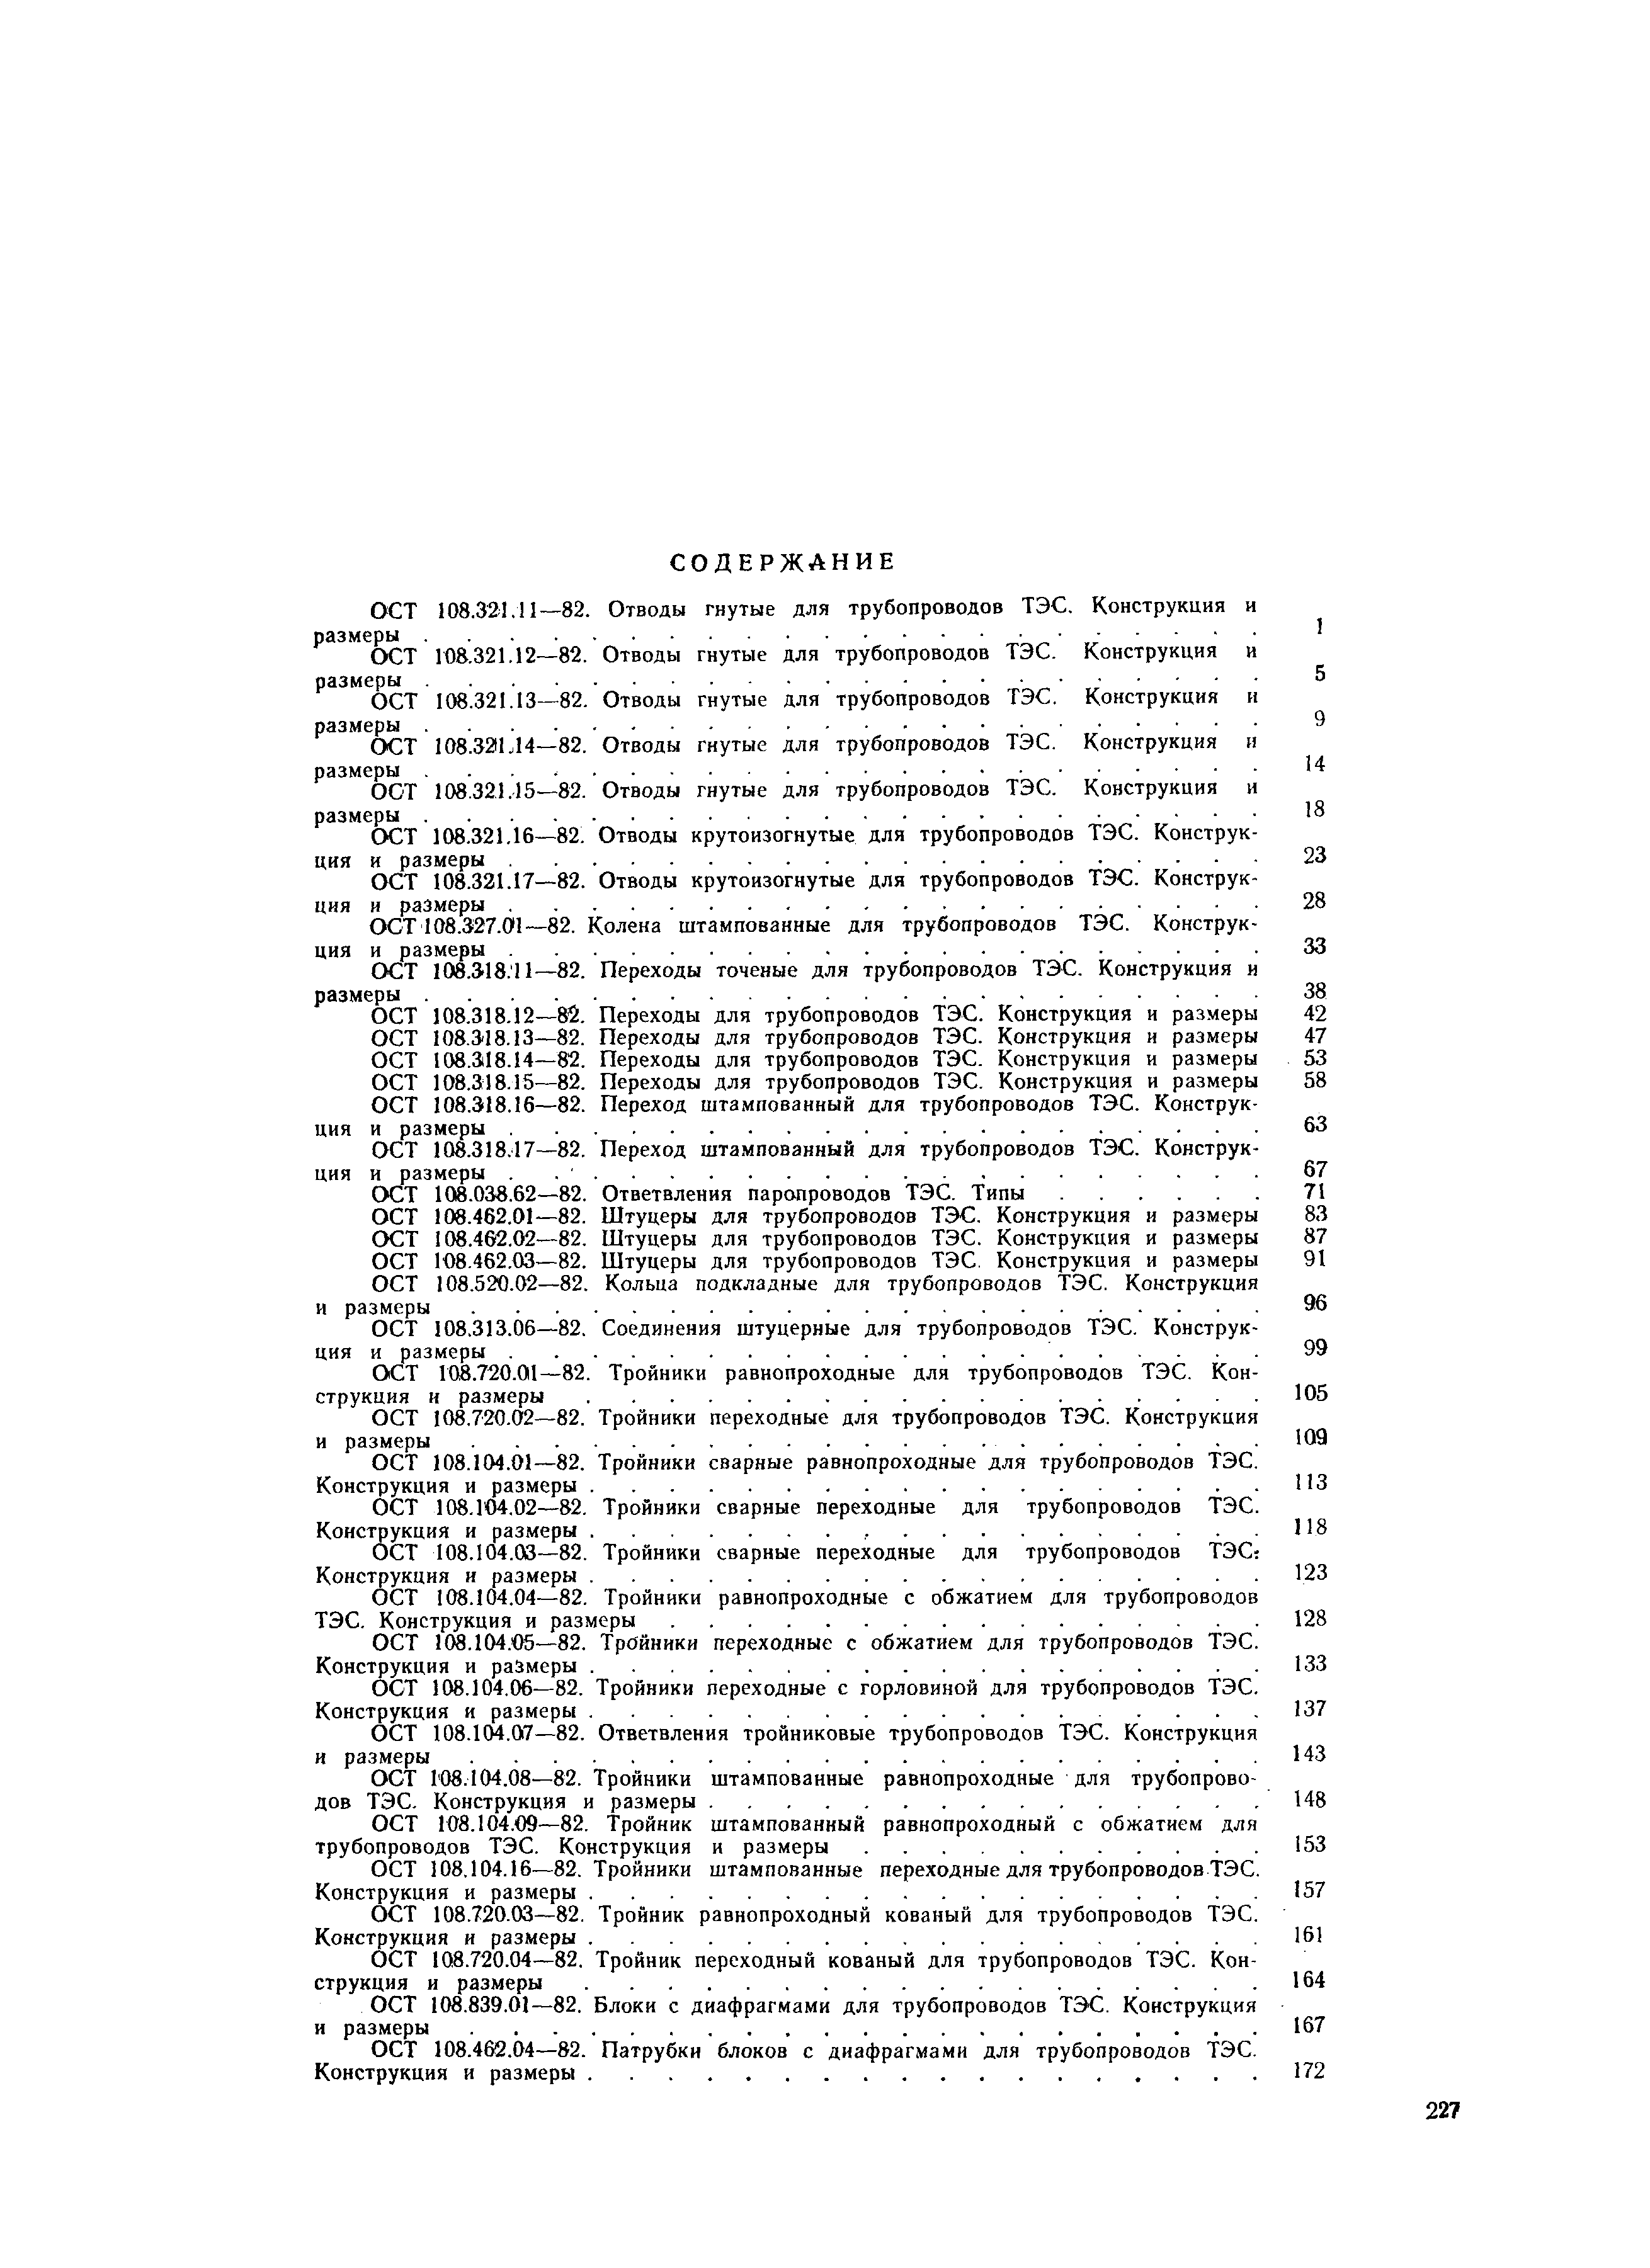 ОСТ 108.462.07-82